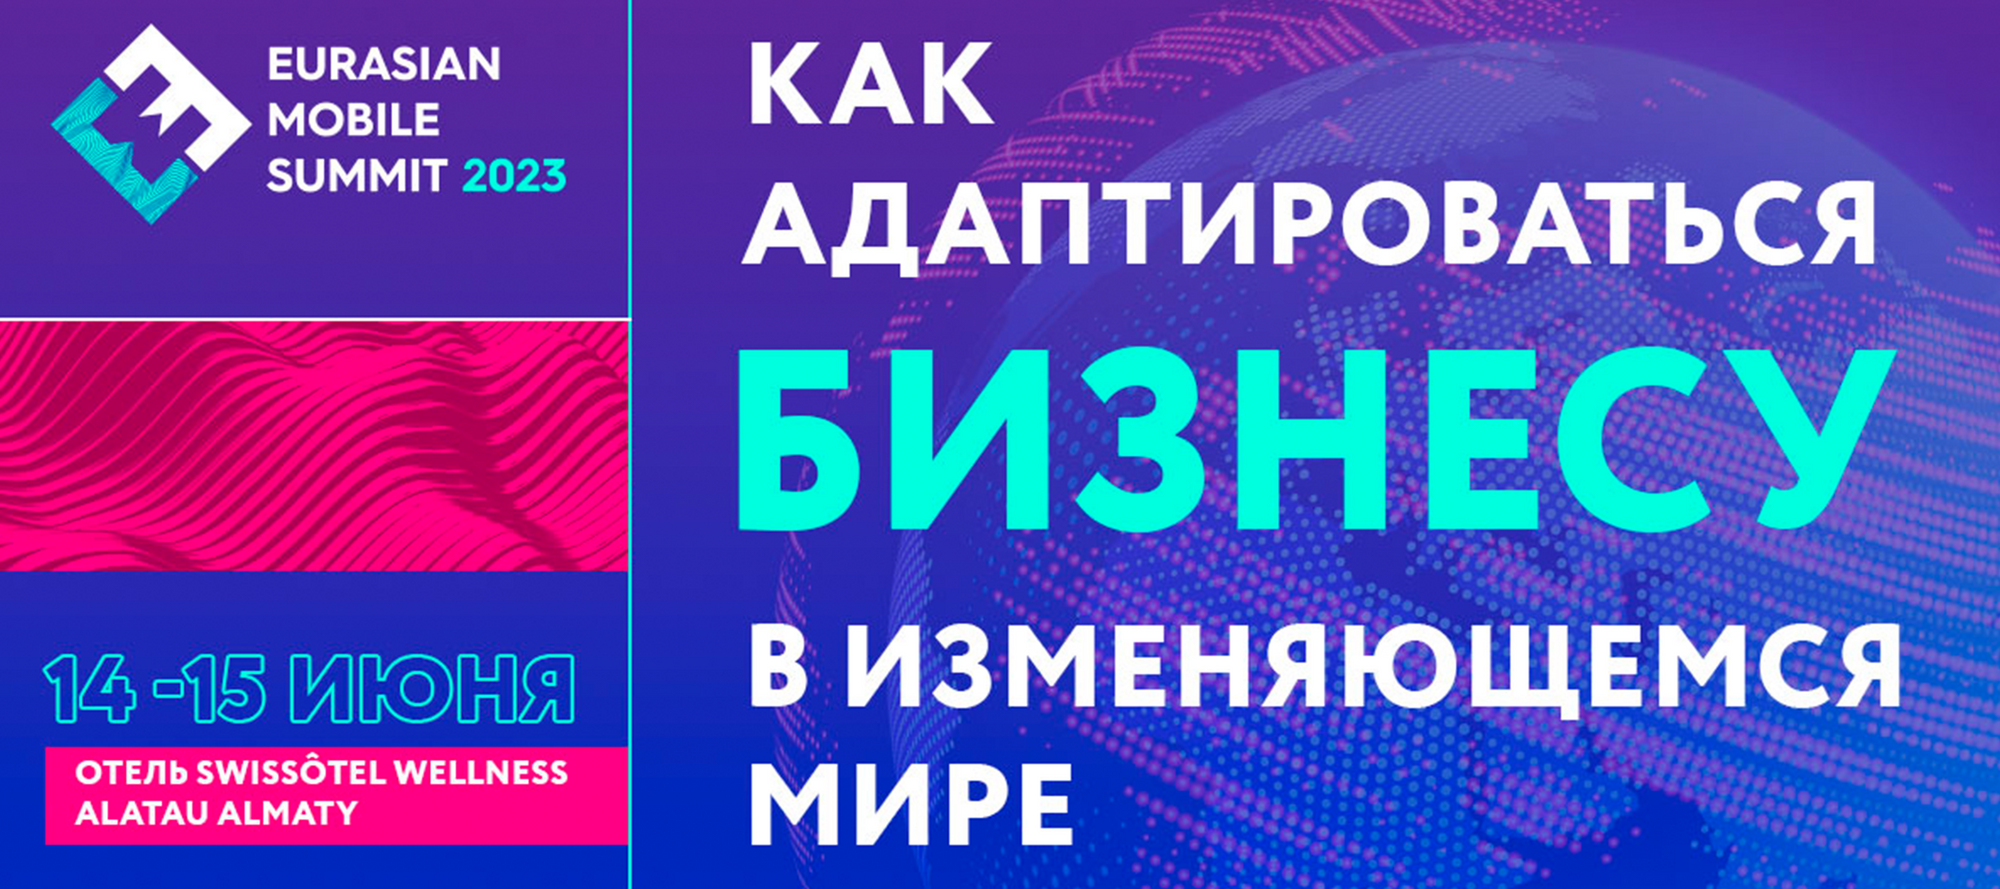 Eurasian Mobile Summit 2023: как адаптироваться бизнесу в изменяющемся мире